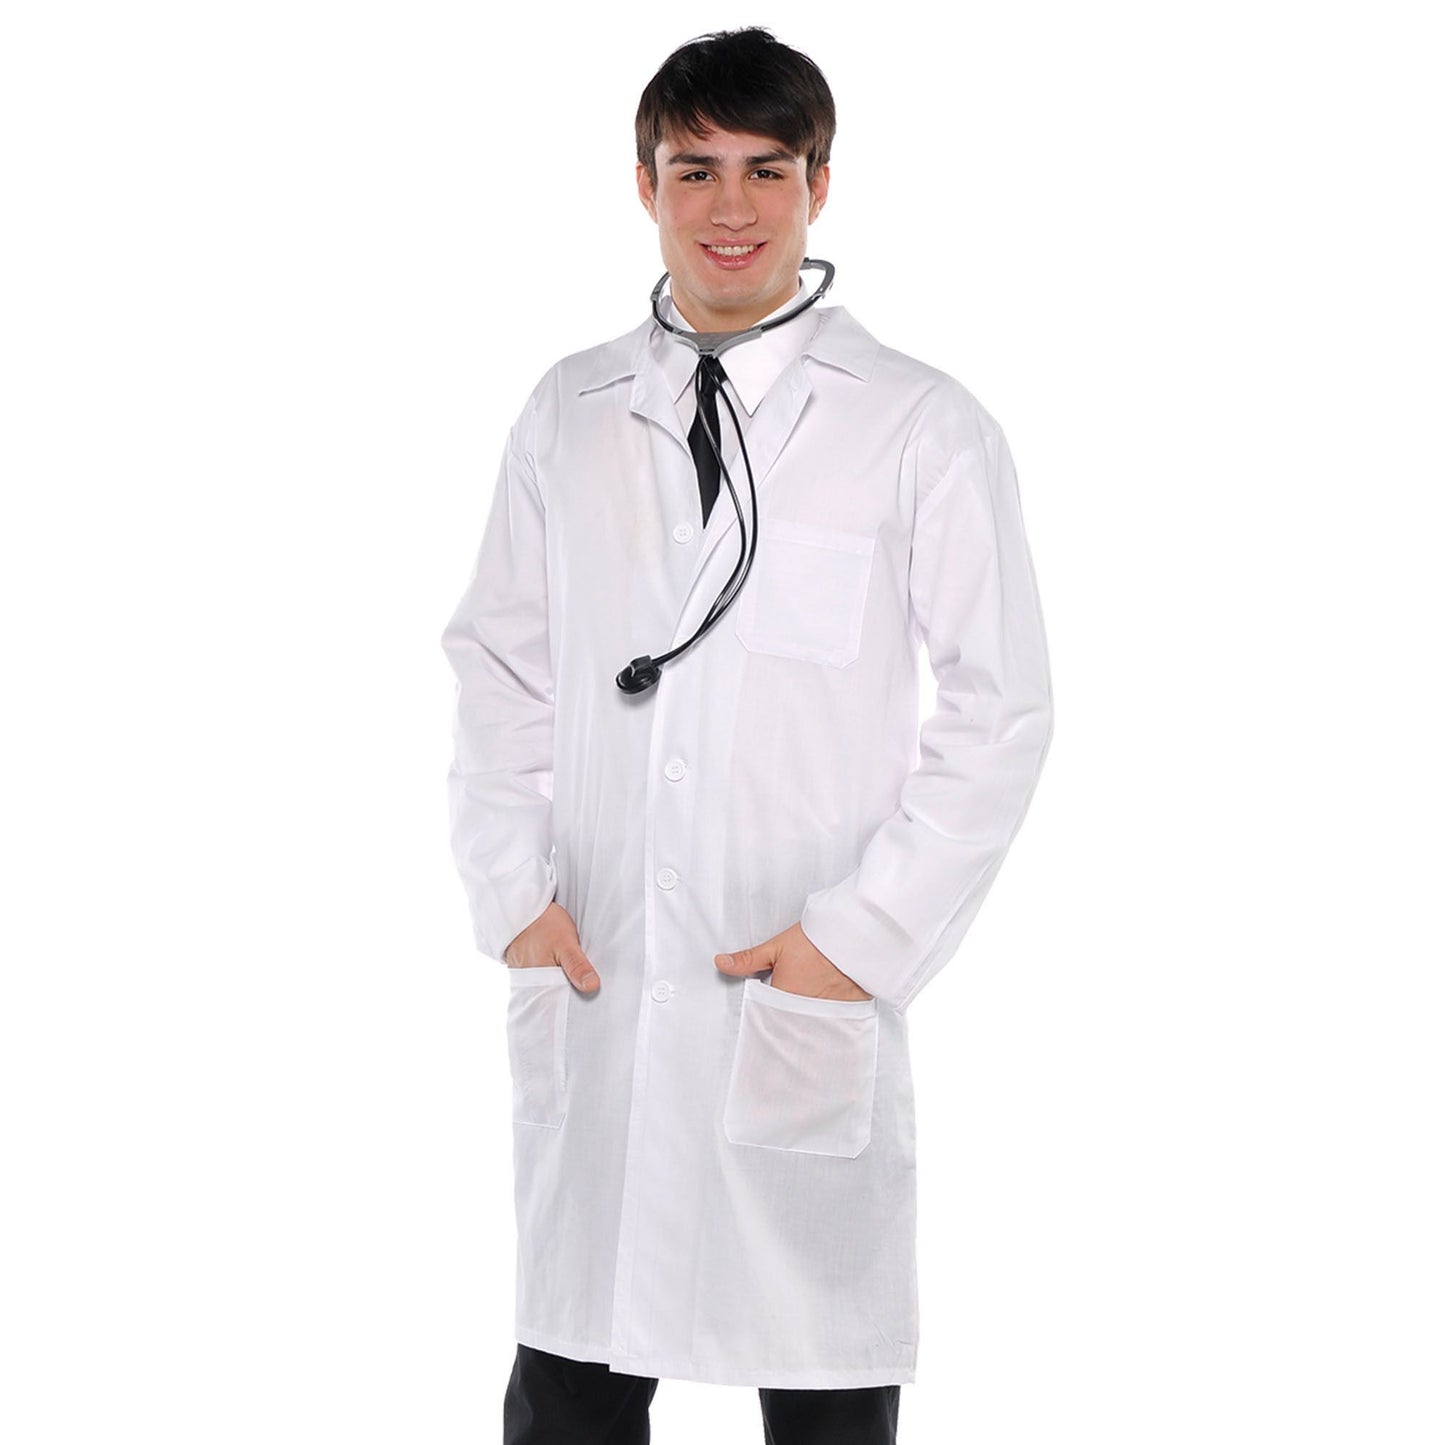 Doctor Coat - Adult